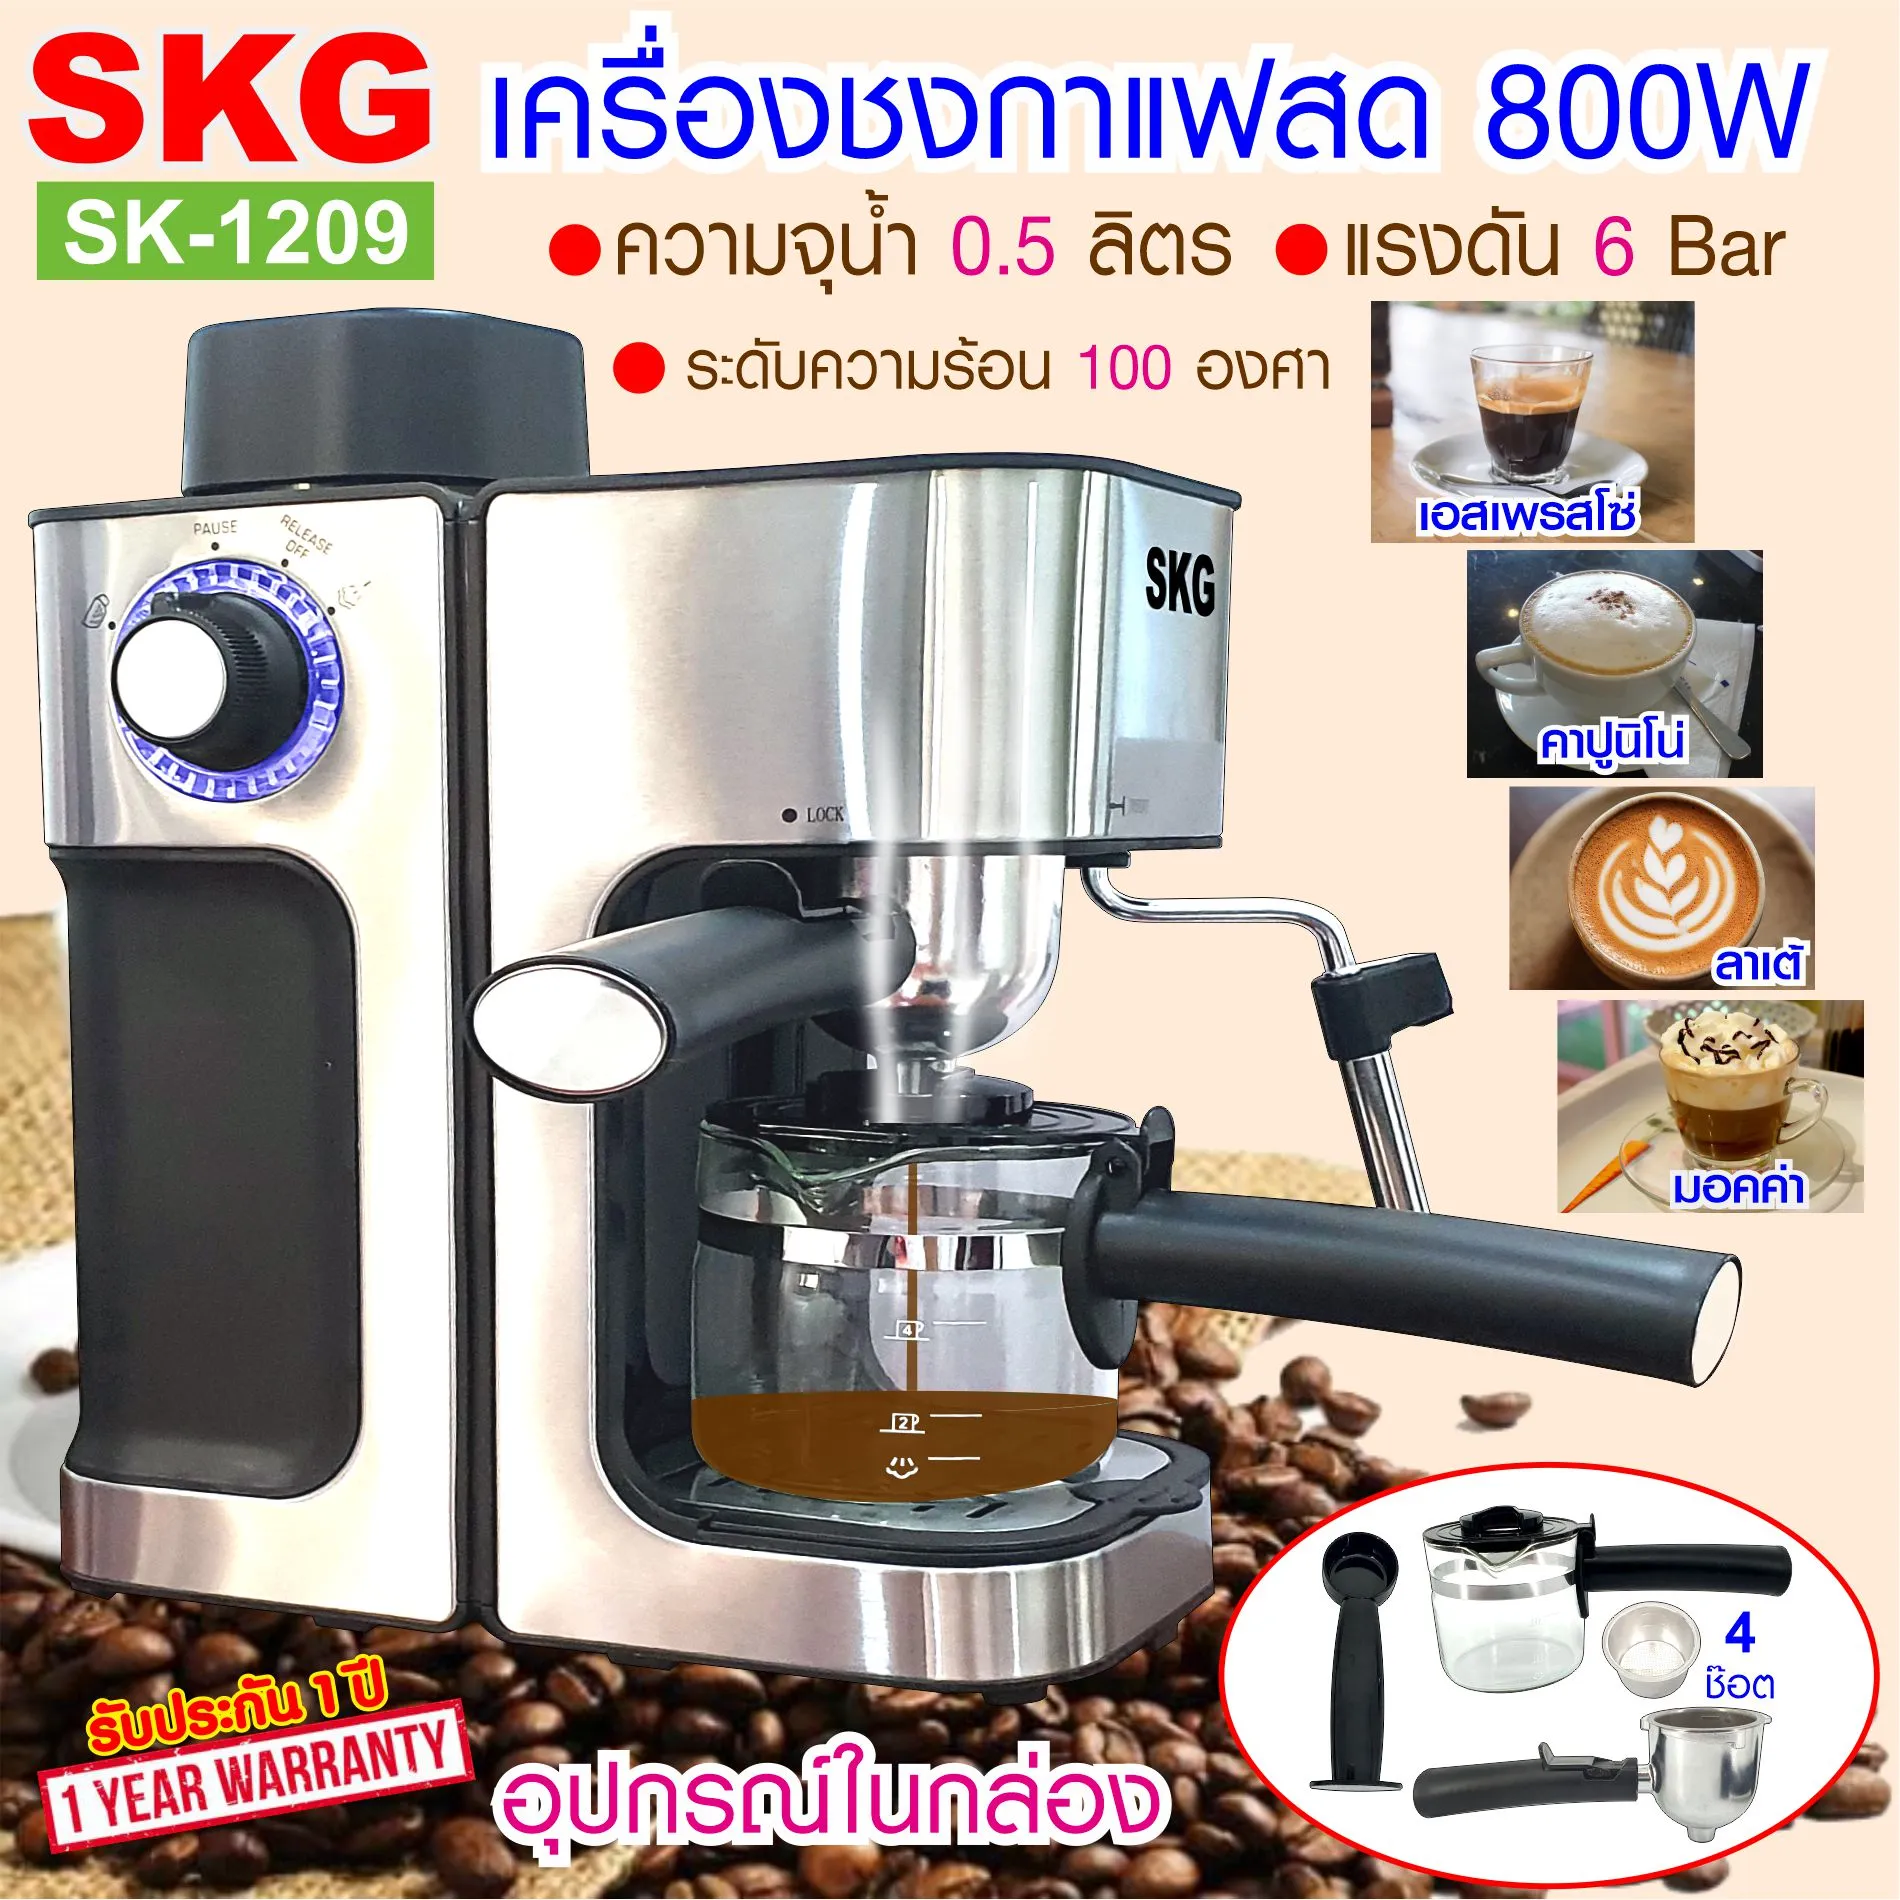 เครื่องชงกาแฟสด 800W 0.5ลิตร  รุ่น SK-1209 สีเงิน , เครื่องชงกาแฟ เครื่องทำกาแฟ เครื่องกาแฟสด coffee machine SKG